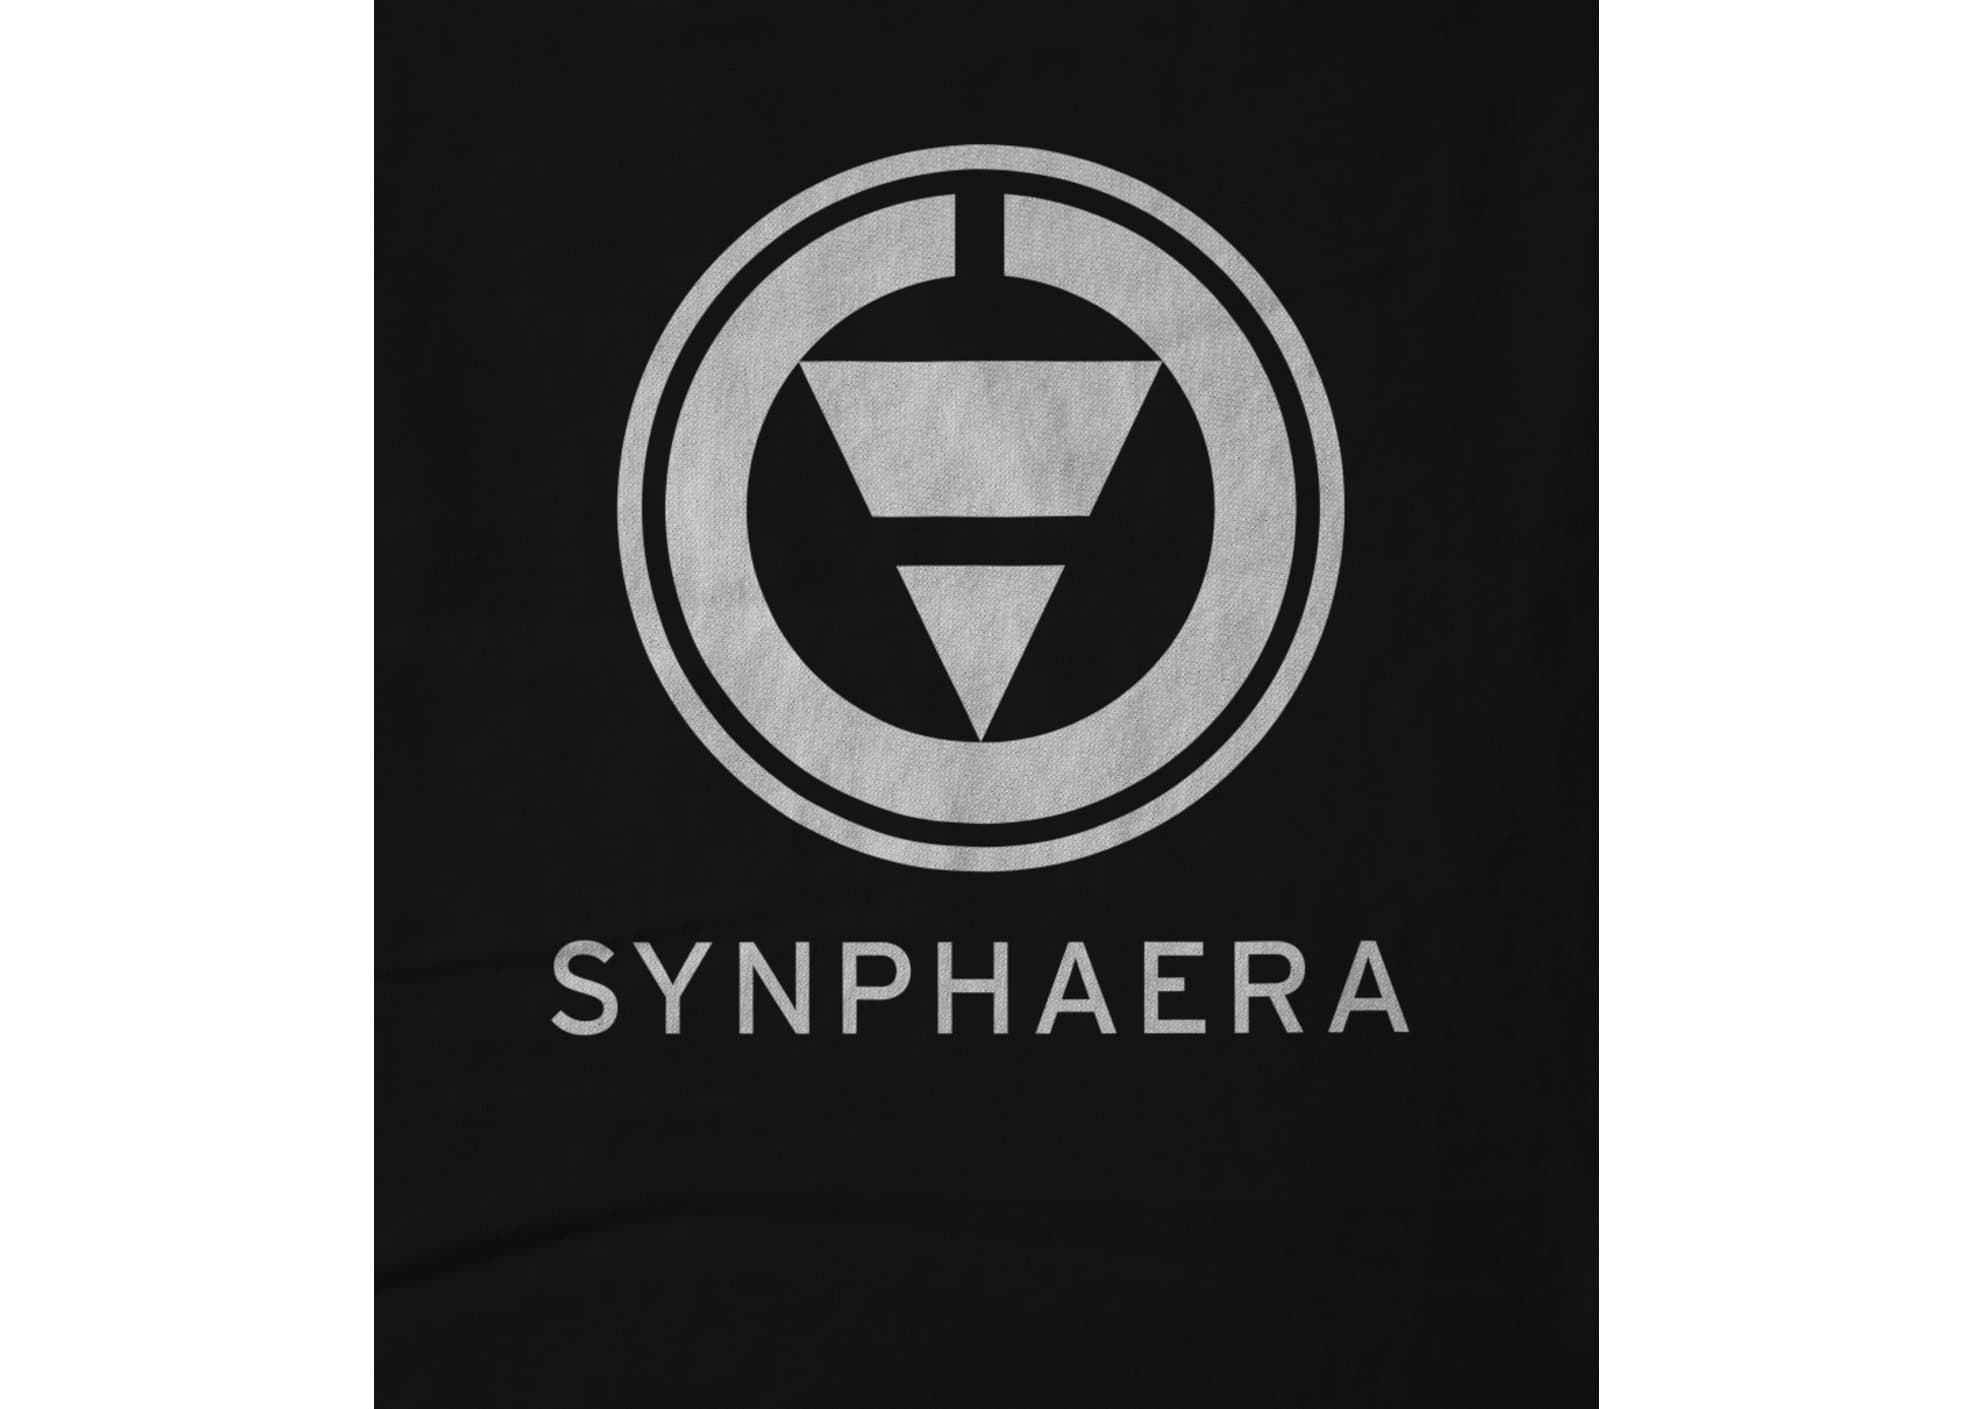 Synphaera original design official 1611772666